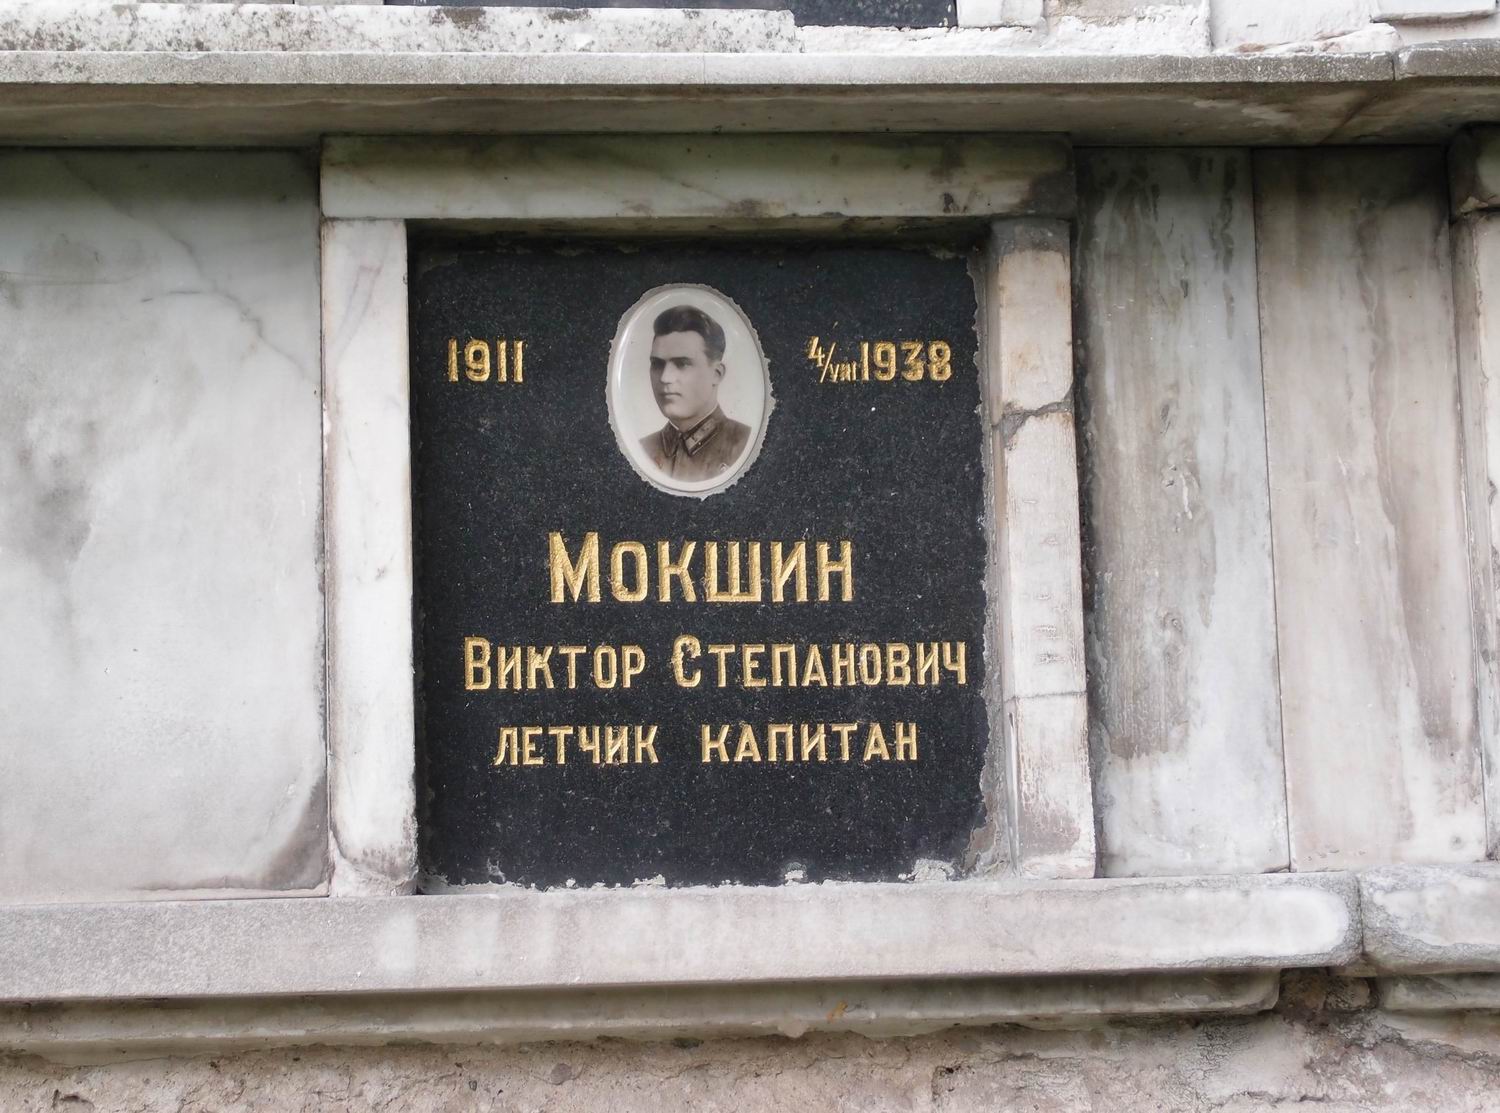 Плита на нише Мокшина В.С. (1911-1938), на Новодевичьем кладбище (колумбарий [4]-21-2).